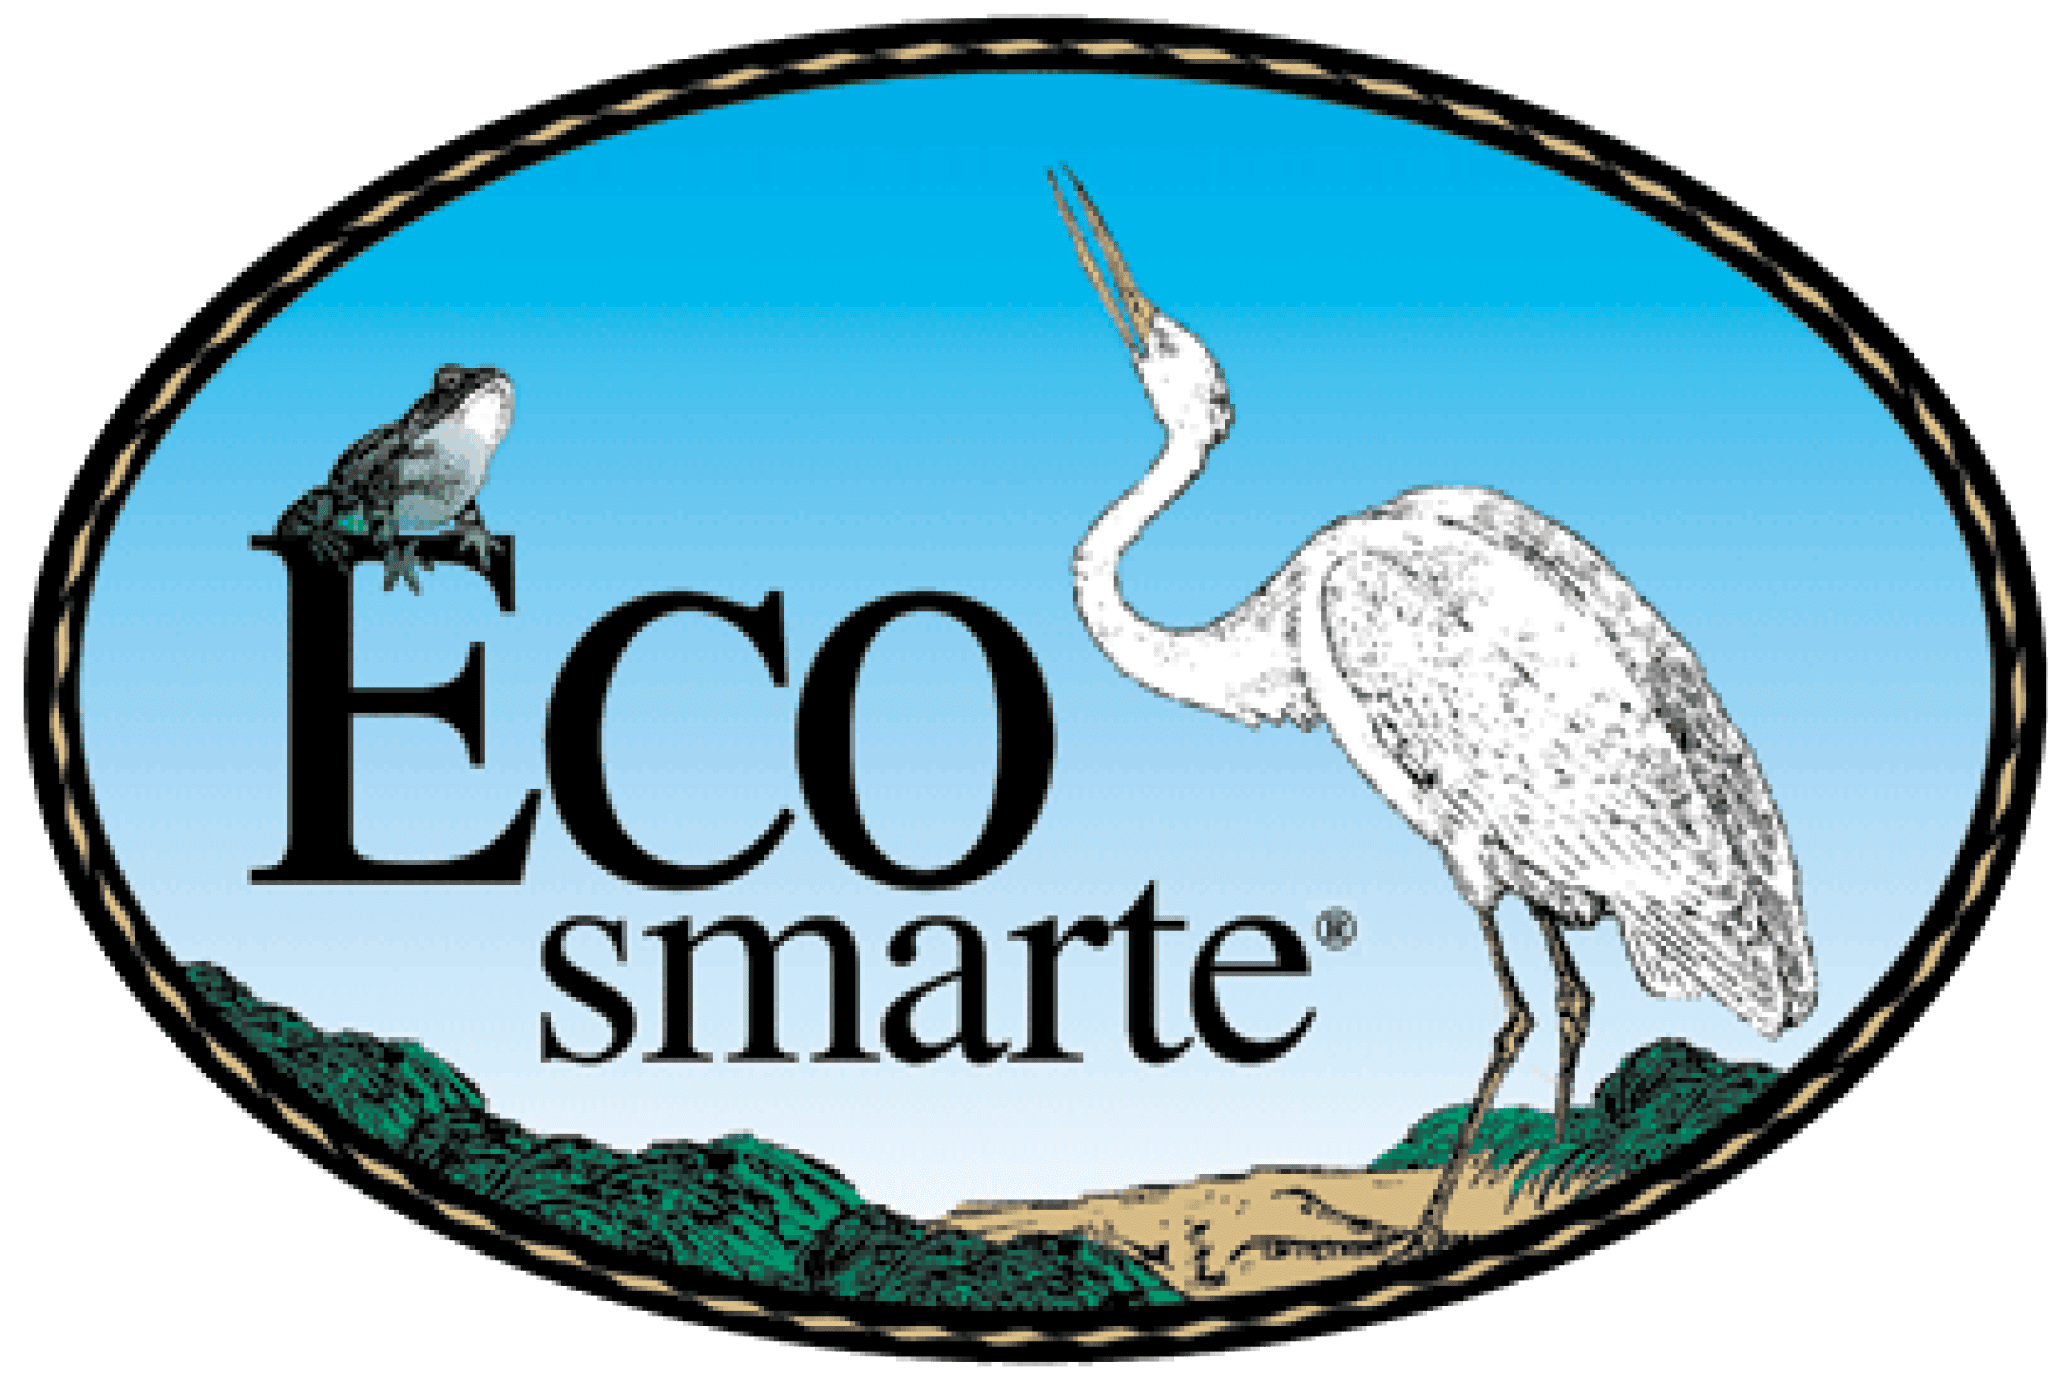 Eco-Smarte Log